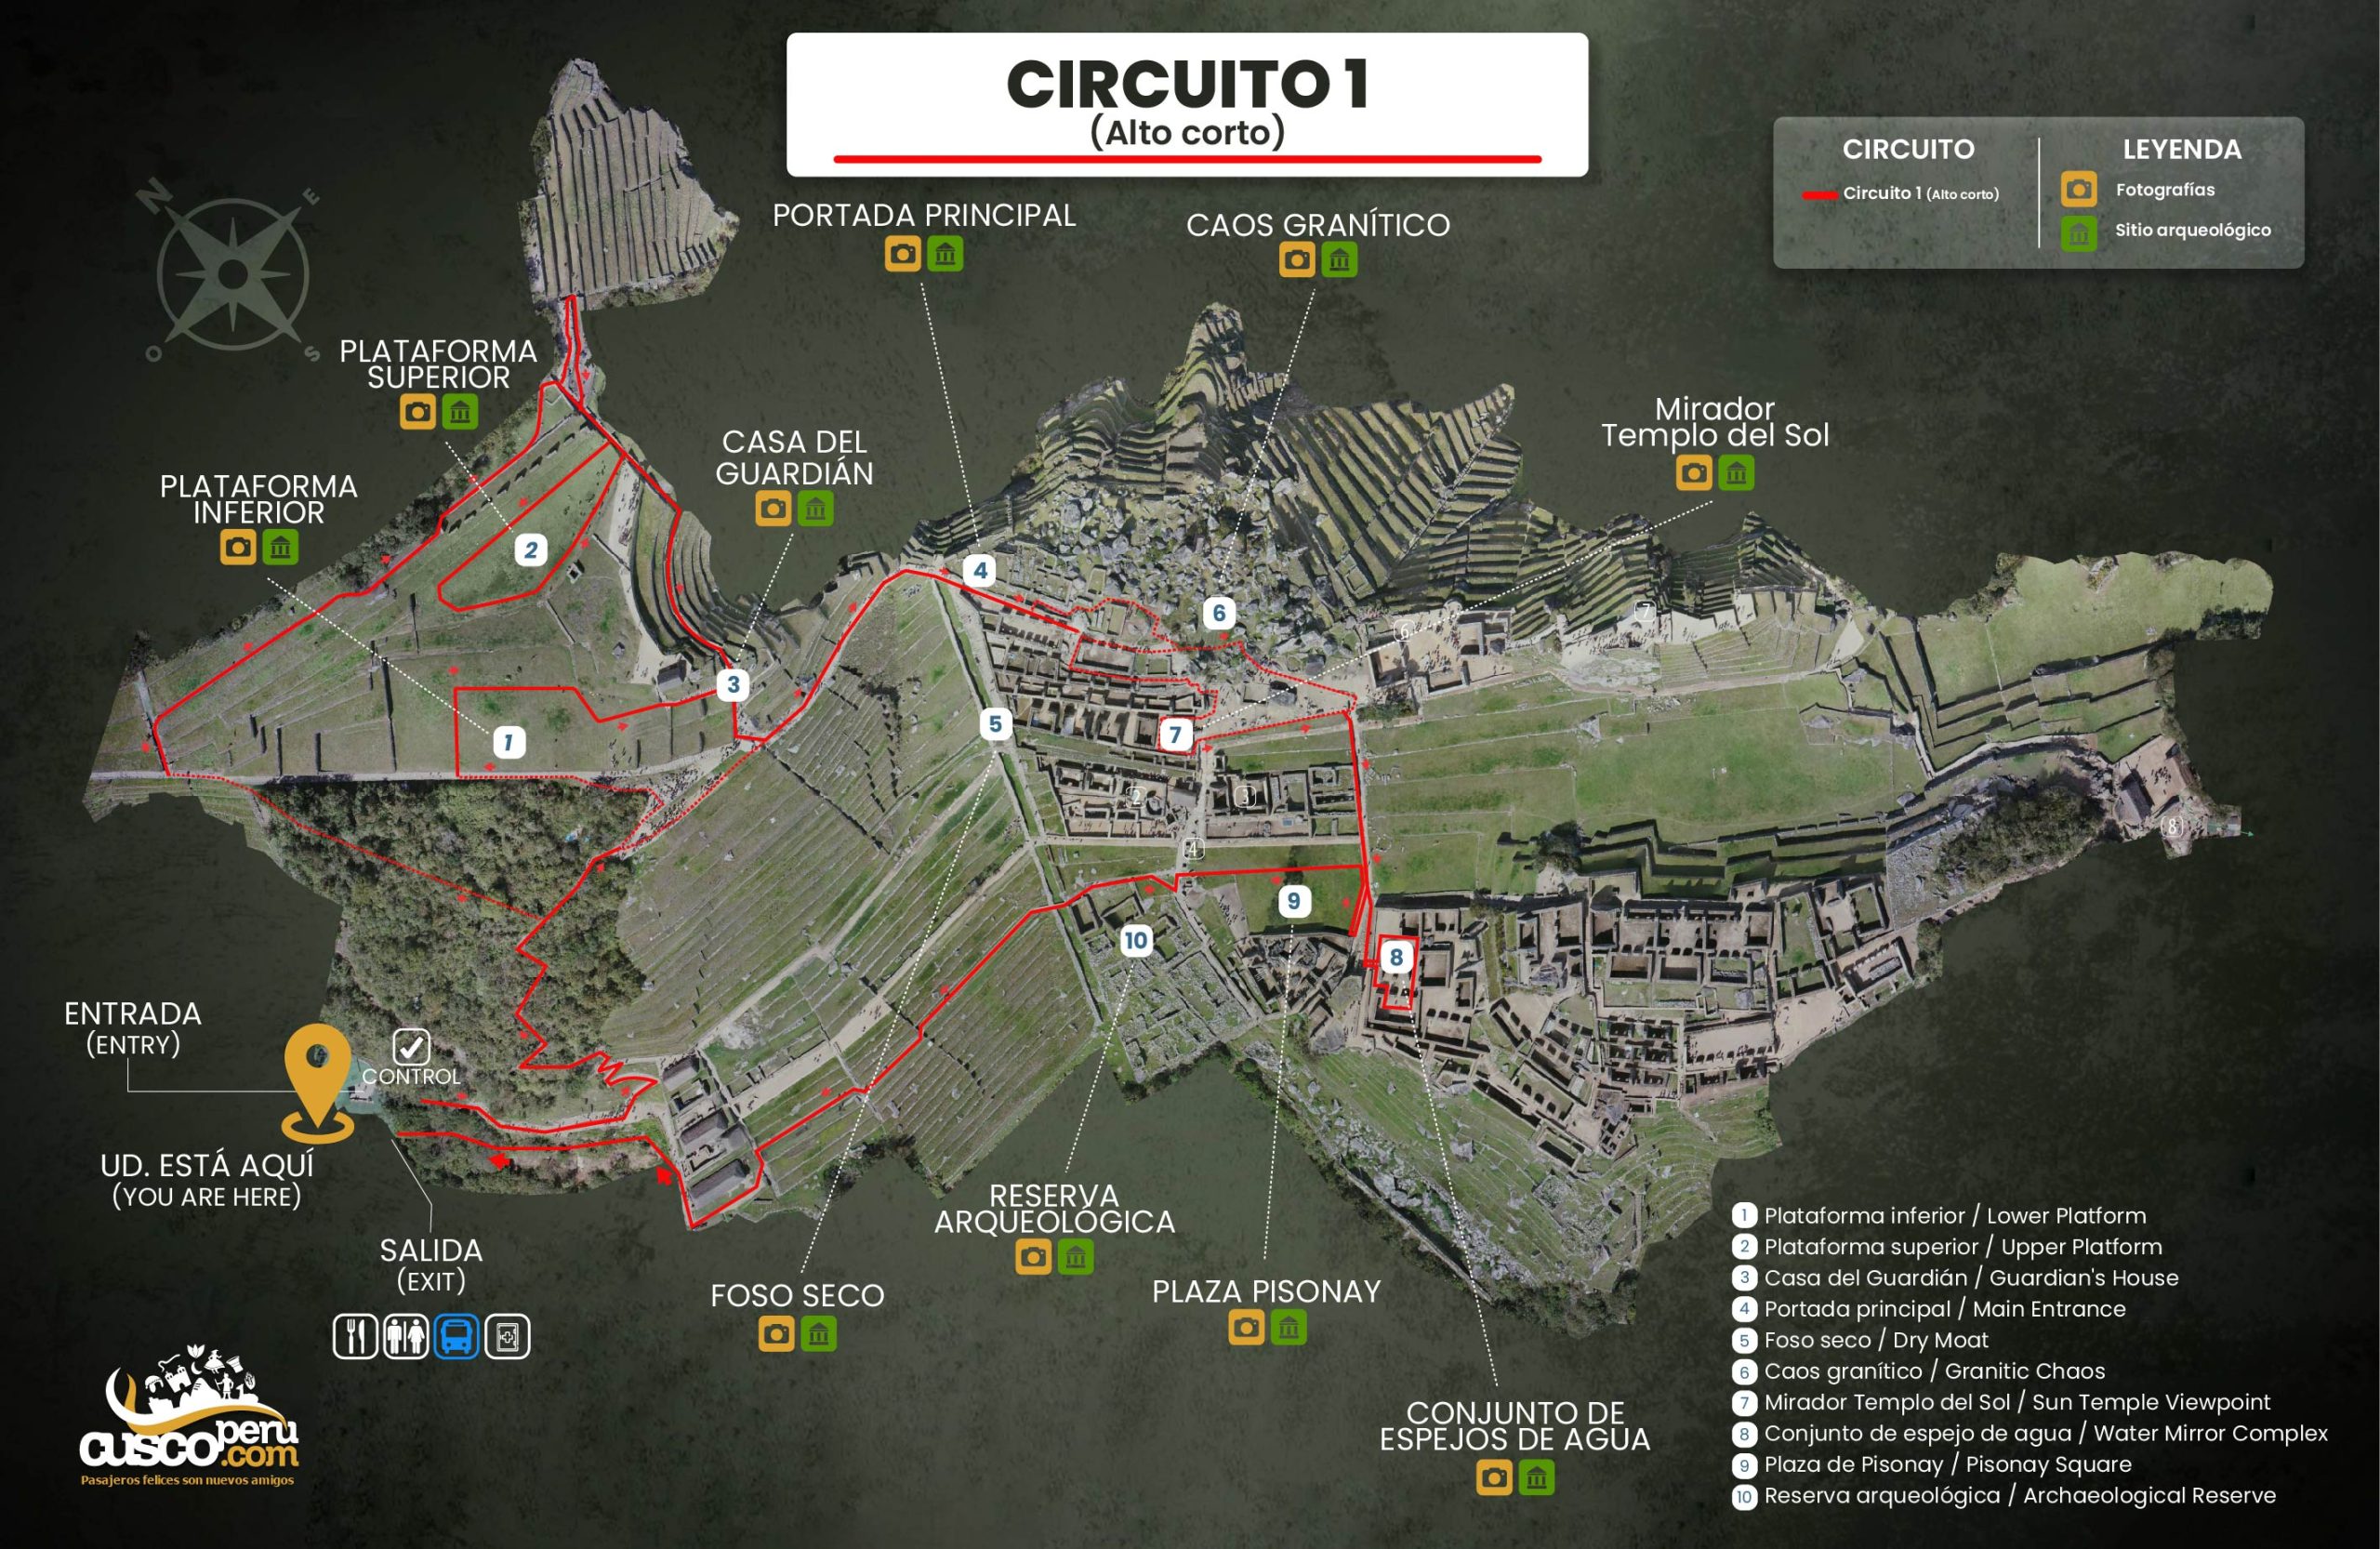 Map of circuit 1 in Machu Picchu. Source: CuscoPeru.com